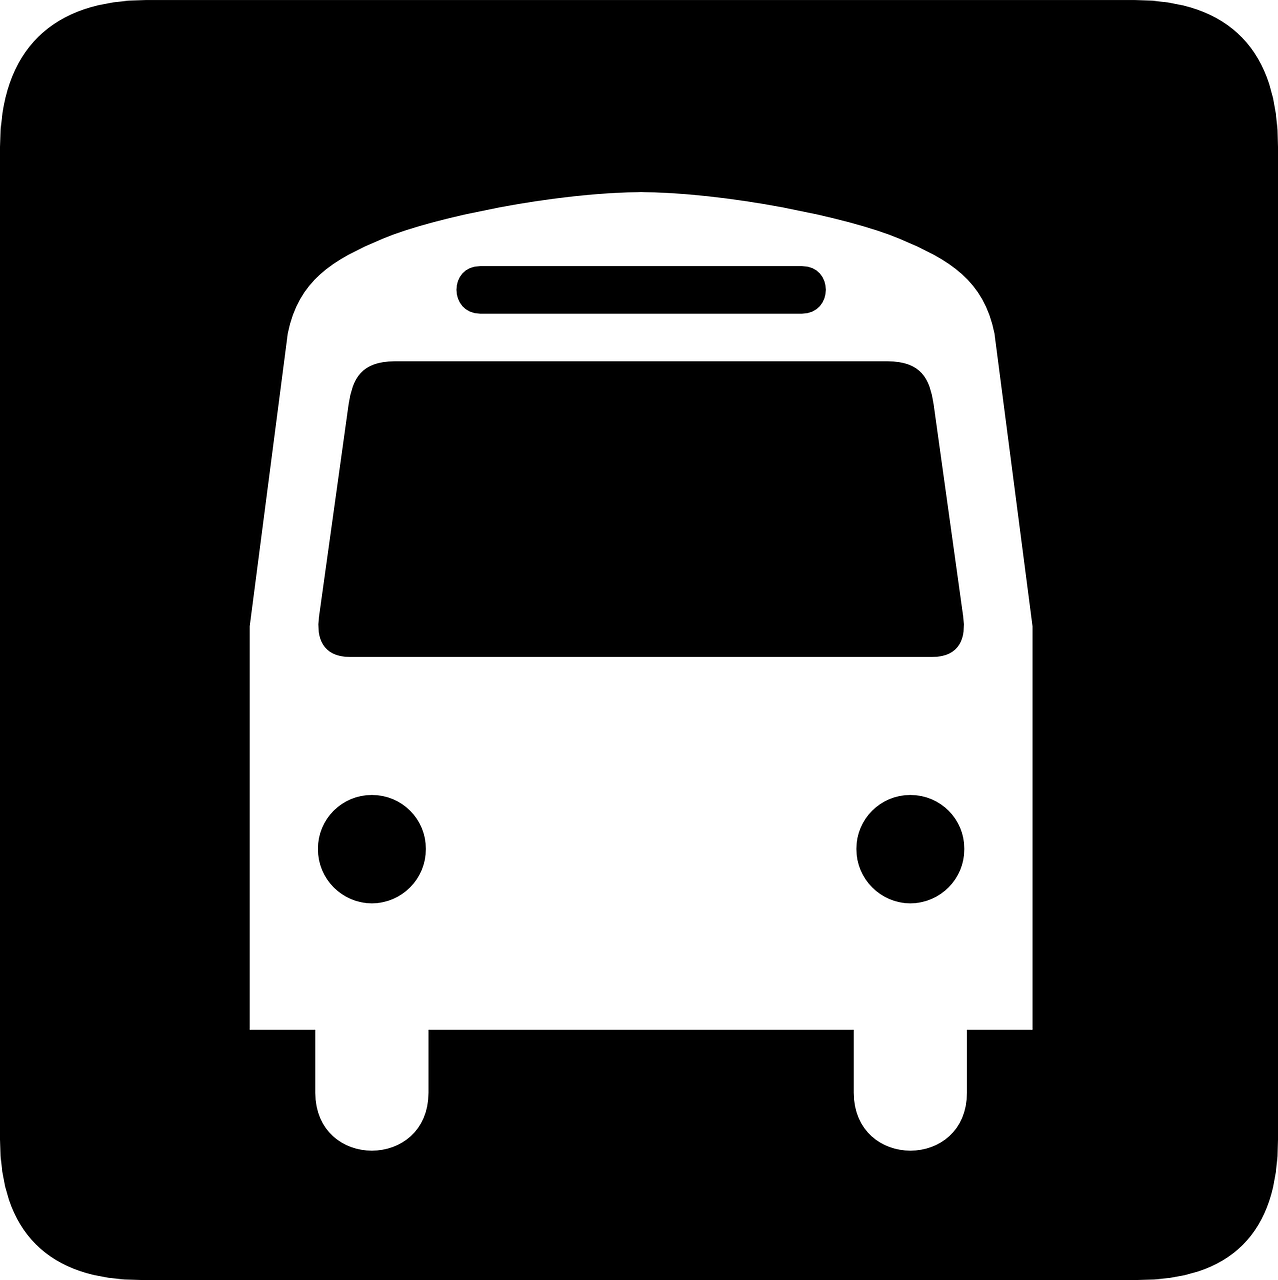 Autobusas, Gabenimas, Informacija, Visuomenė, Transportas, Kelionė, Piktograma, Ženklas, Simbolis, Piktograma